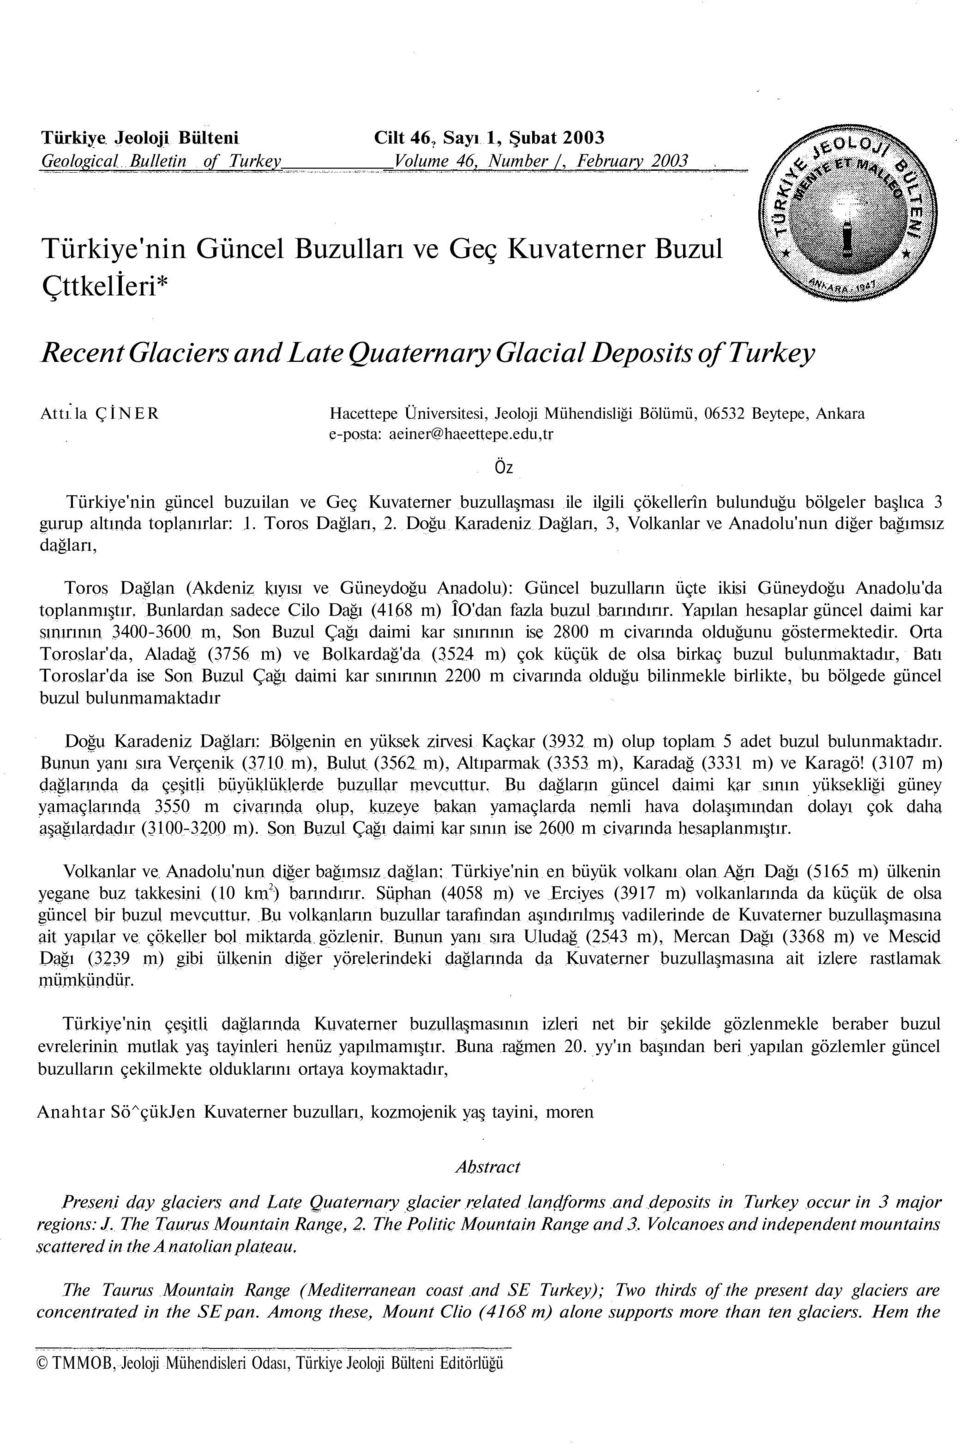 Deposits of Turkey Attı la ÇİNER Hacettepe Üniversitesi, Jeoloji Mühendisliği Bölümü, 06532 Beytepe, Ankara e-posta: aeiner@haeettepe.